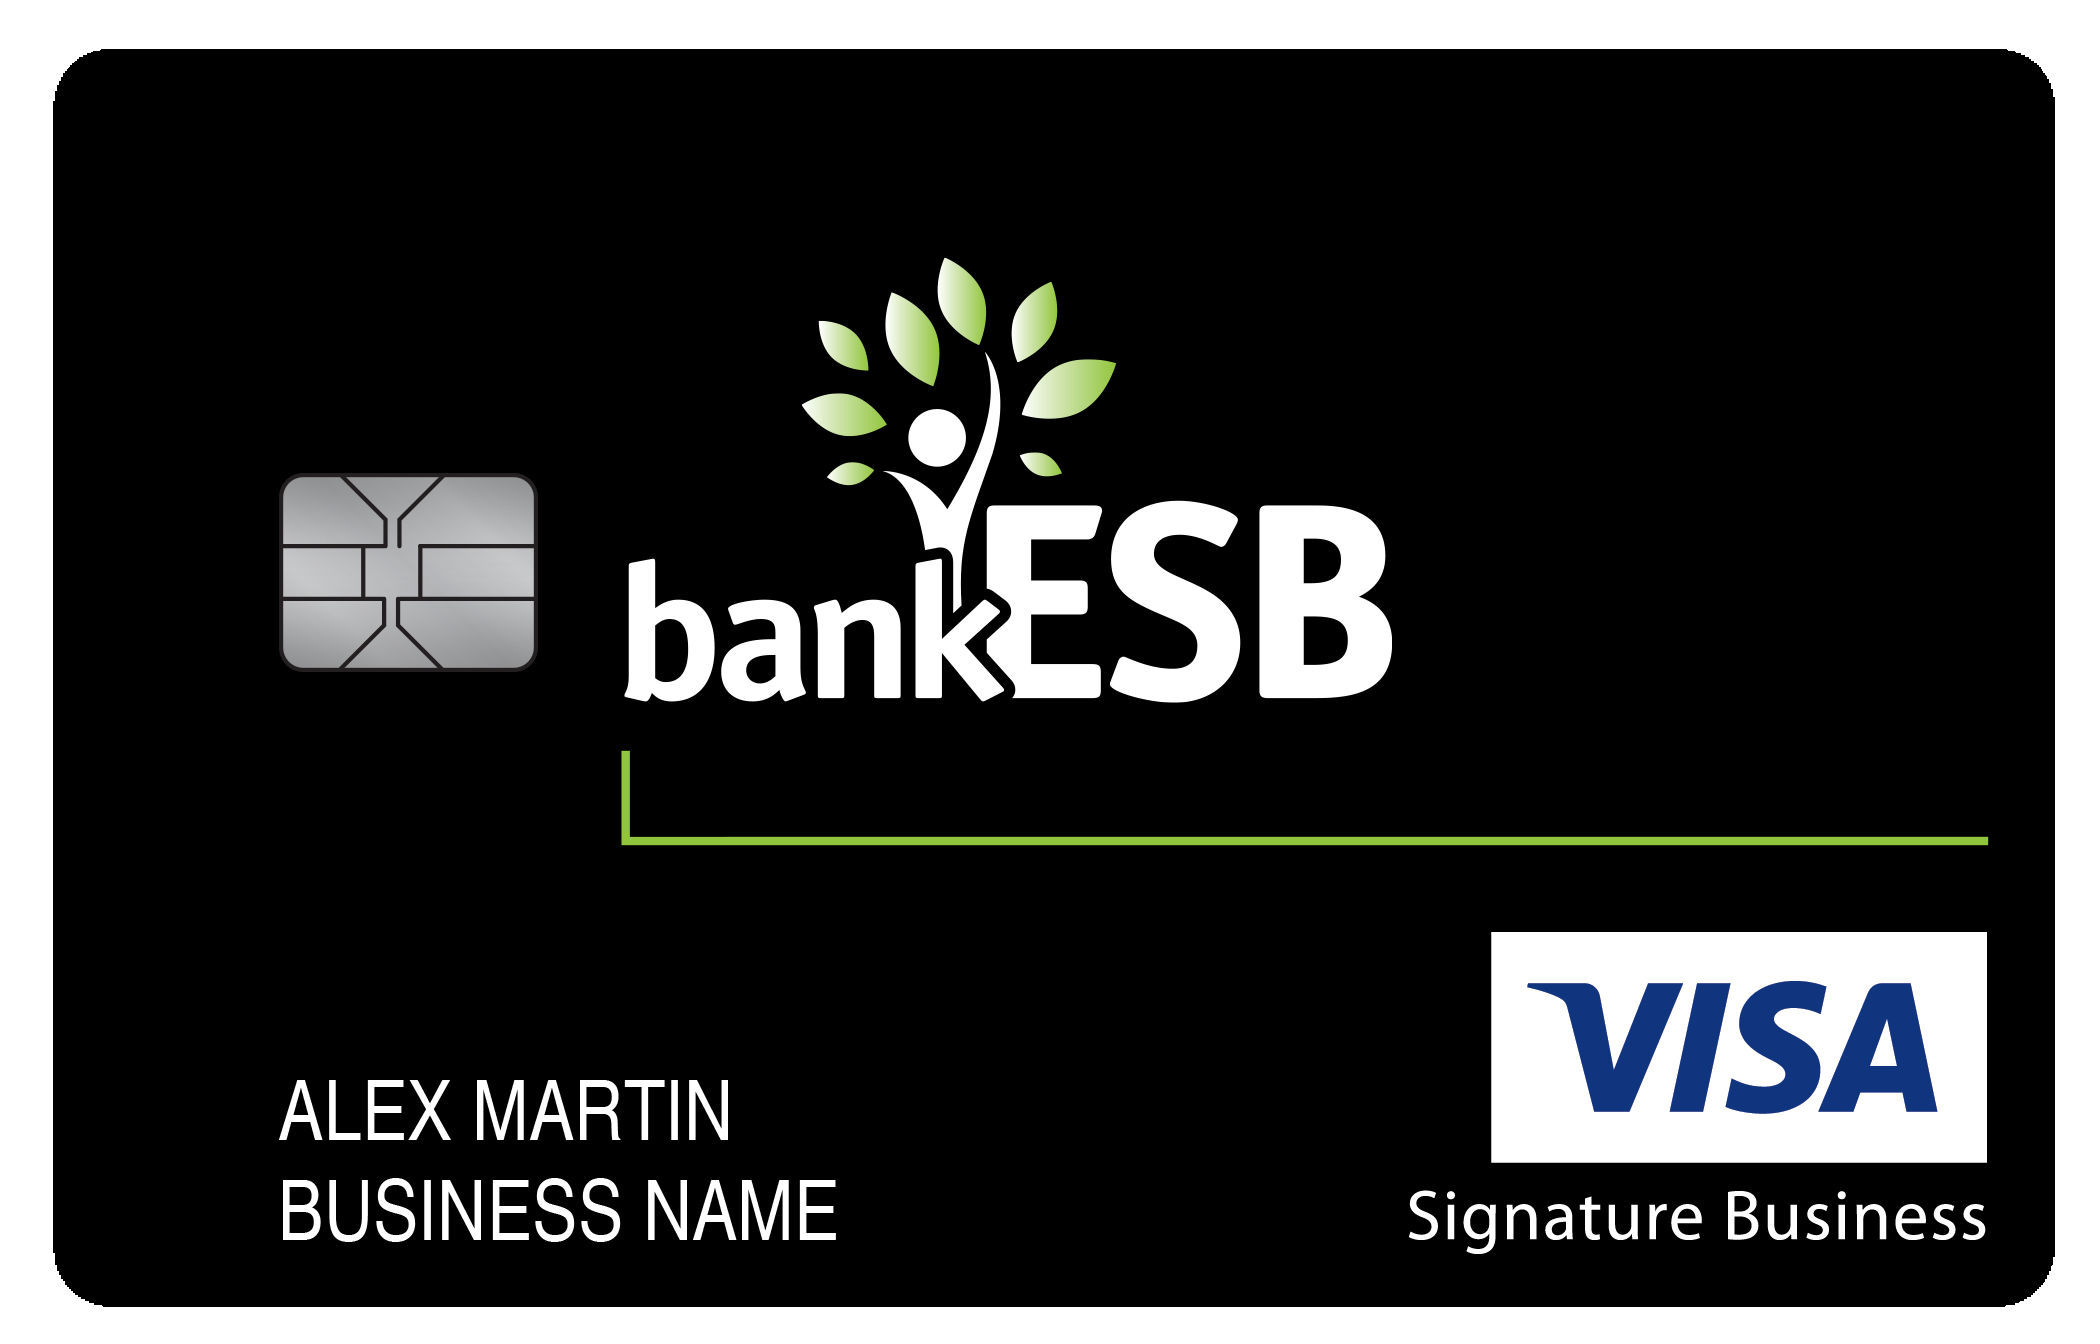 bankESB Smart Business Rewards Card